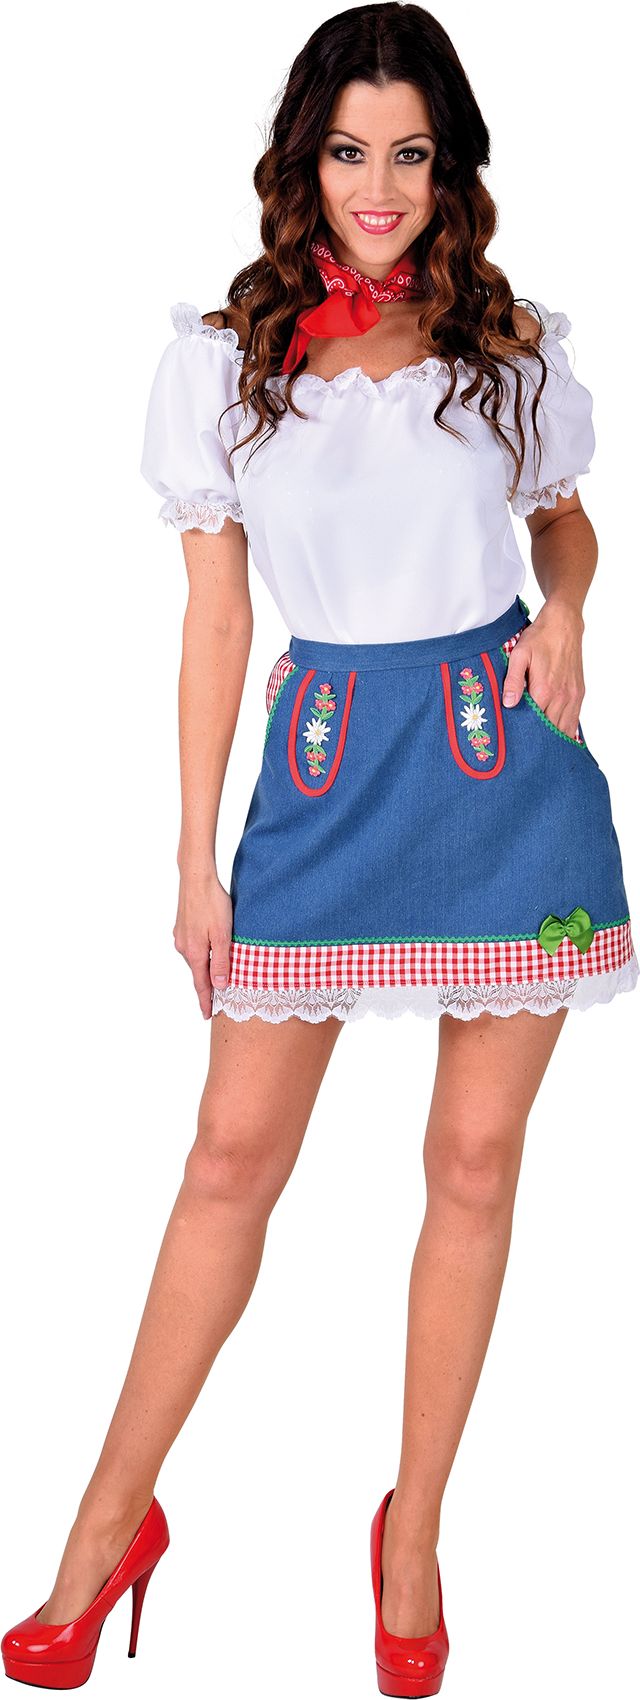 Tirol mini rok dames